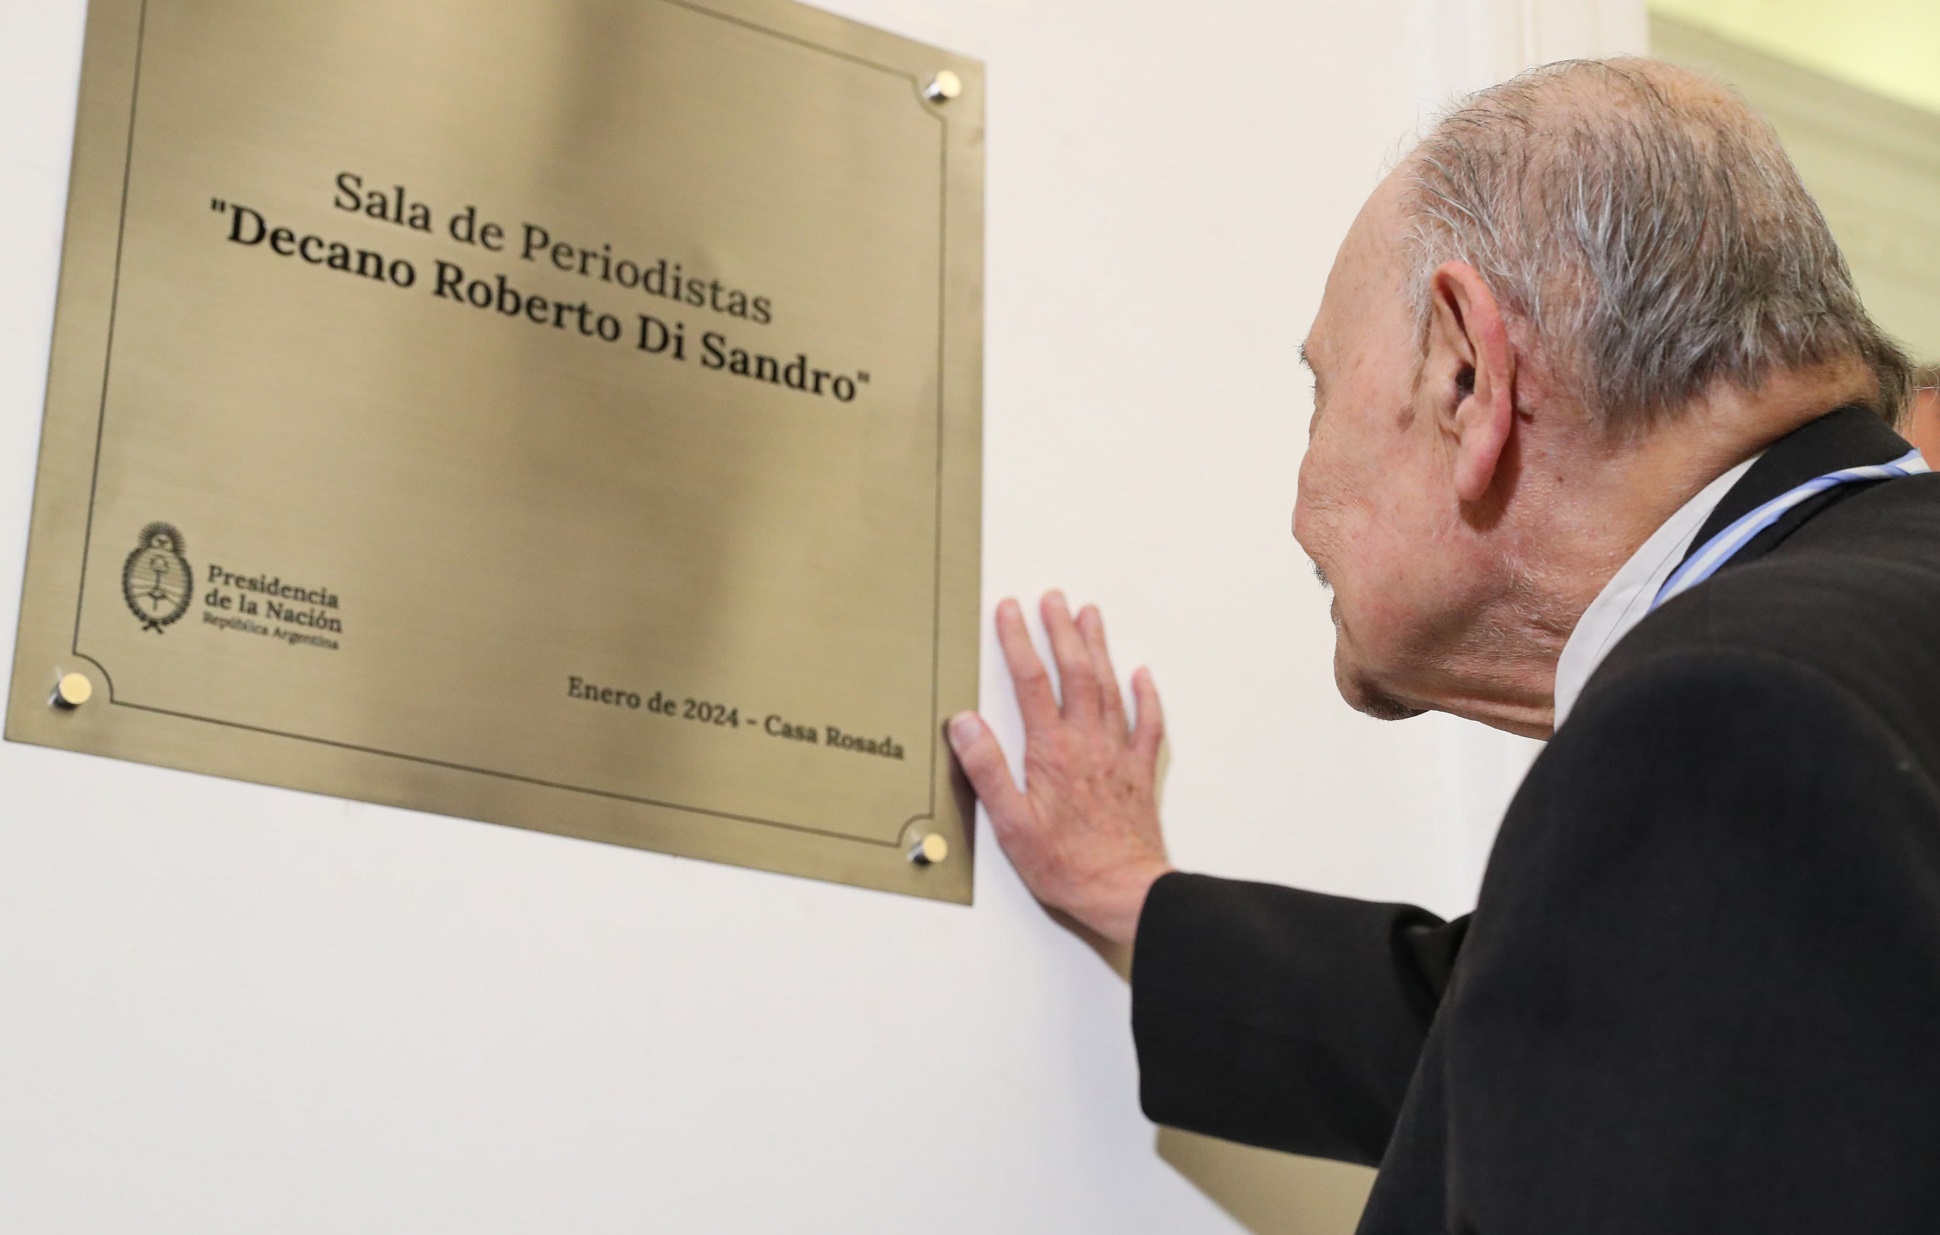 Homenaje en Casa Rosada al Decano de la Sala de Periodistas, Roberto ‘Tano’ Di Sandro